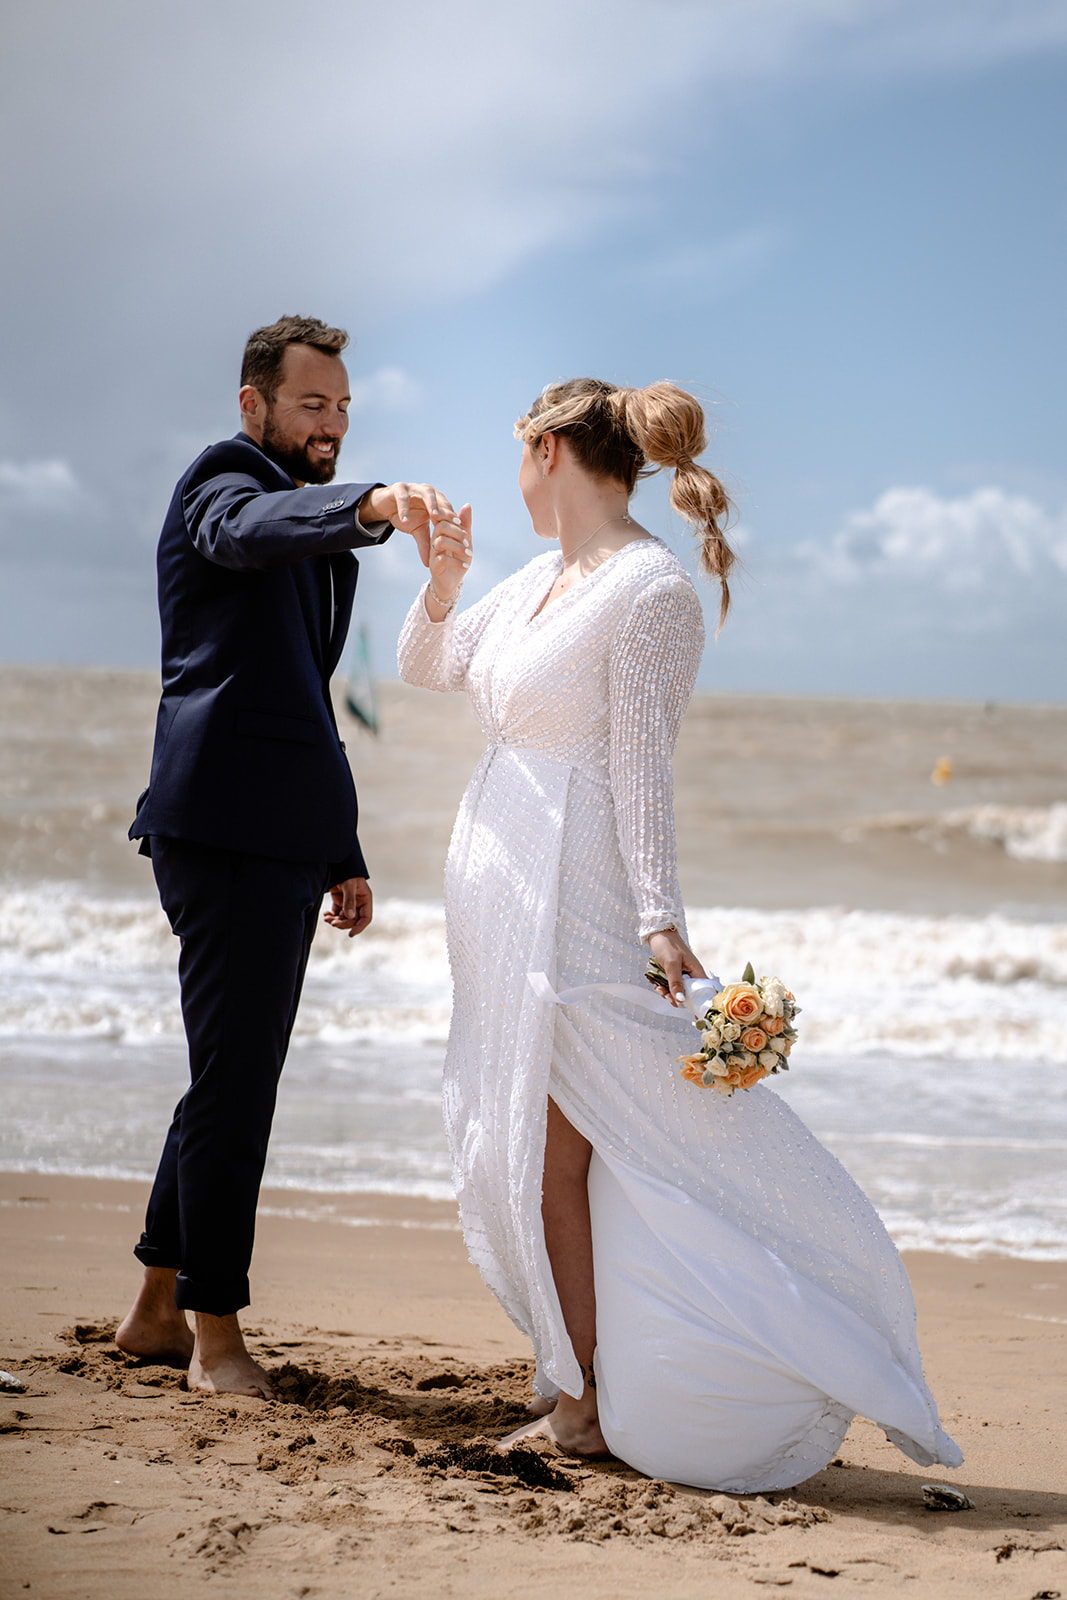 séance couple mariage au soleil, photographe chatelaillon-plage.